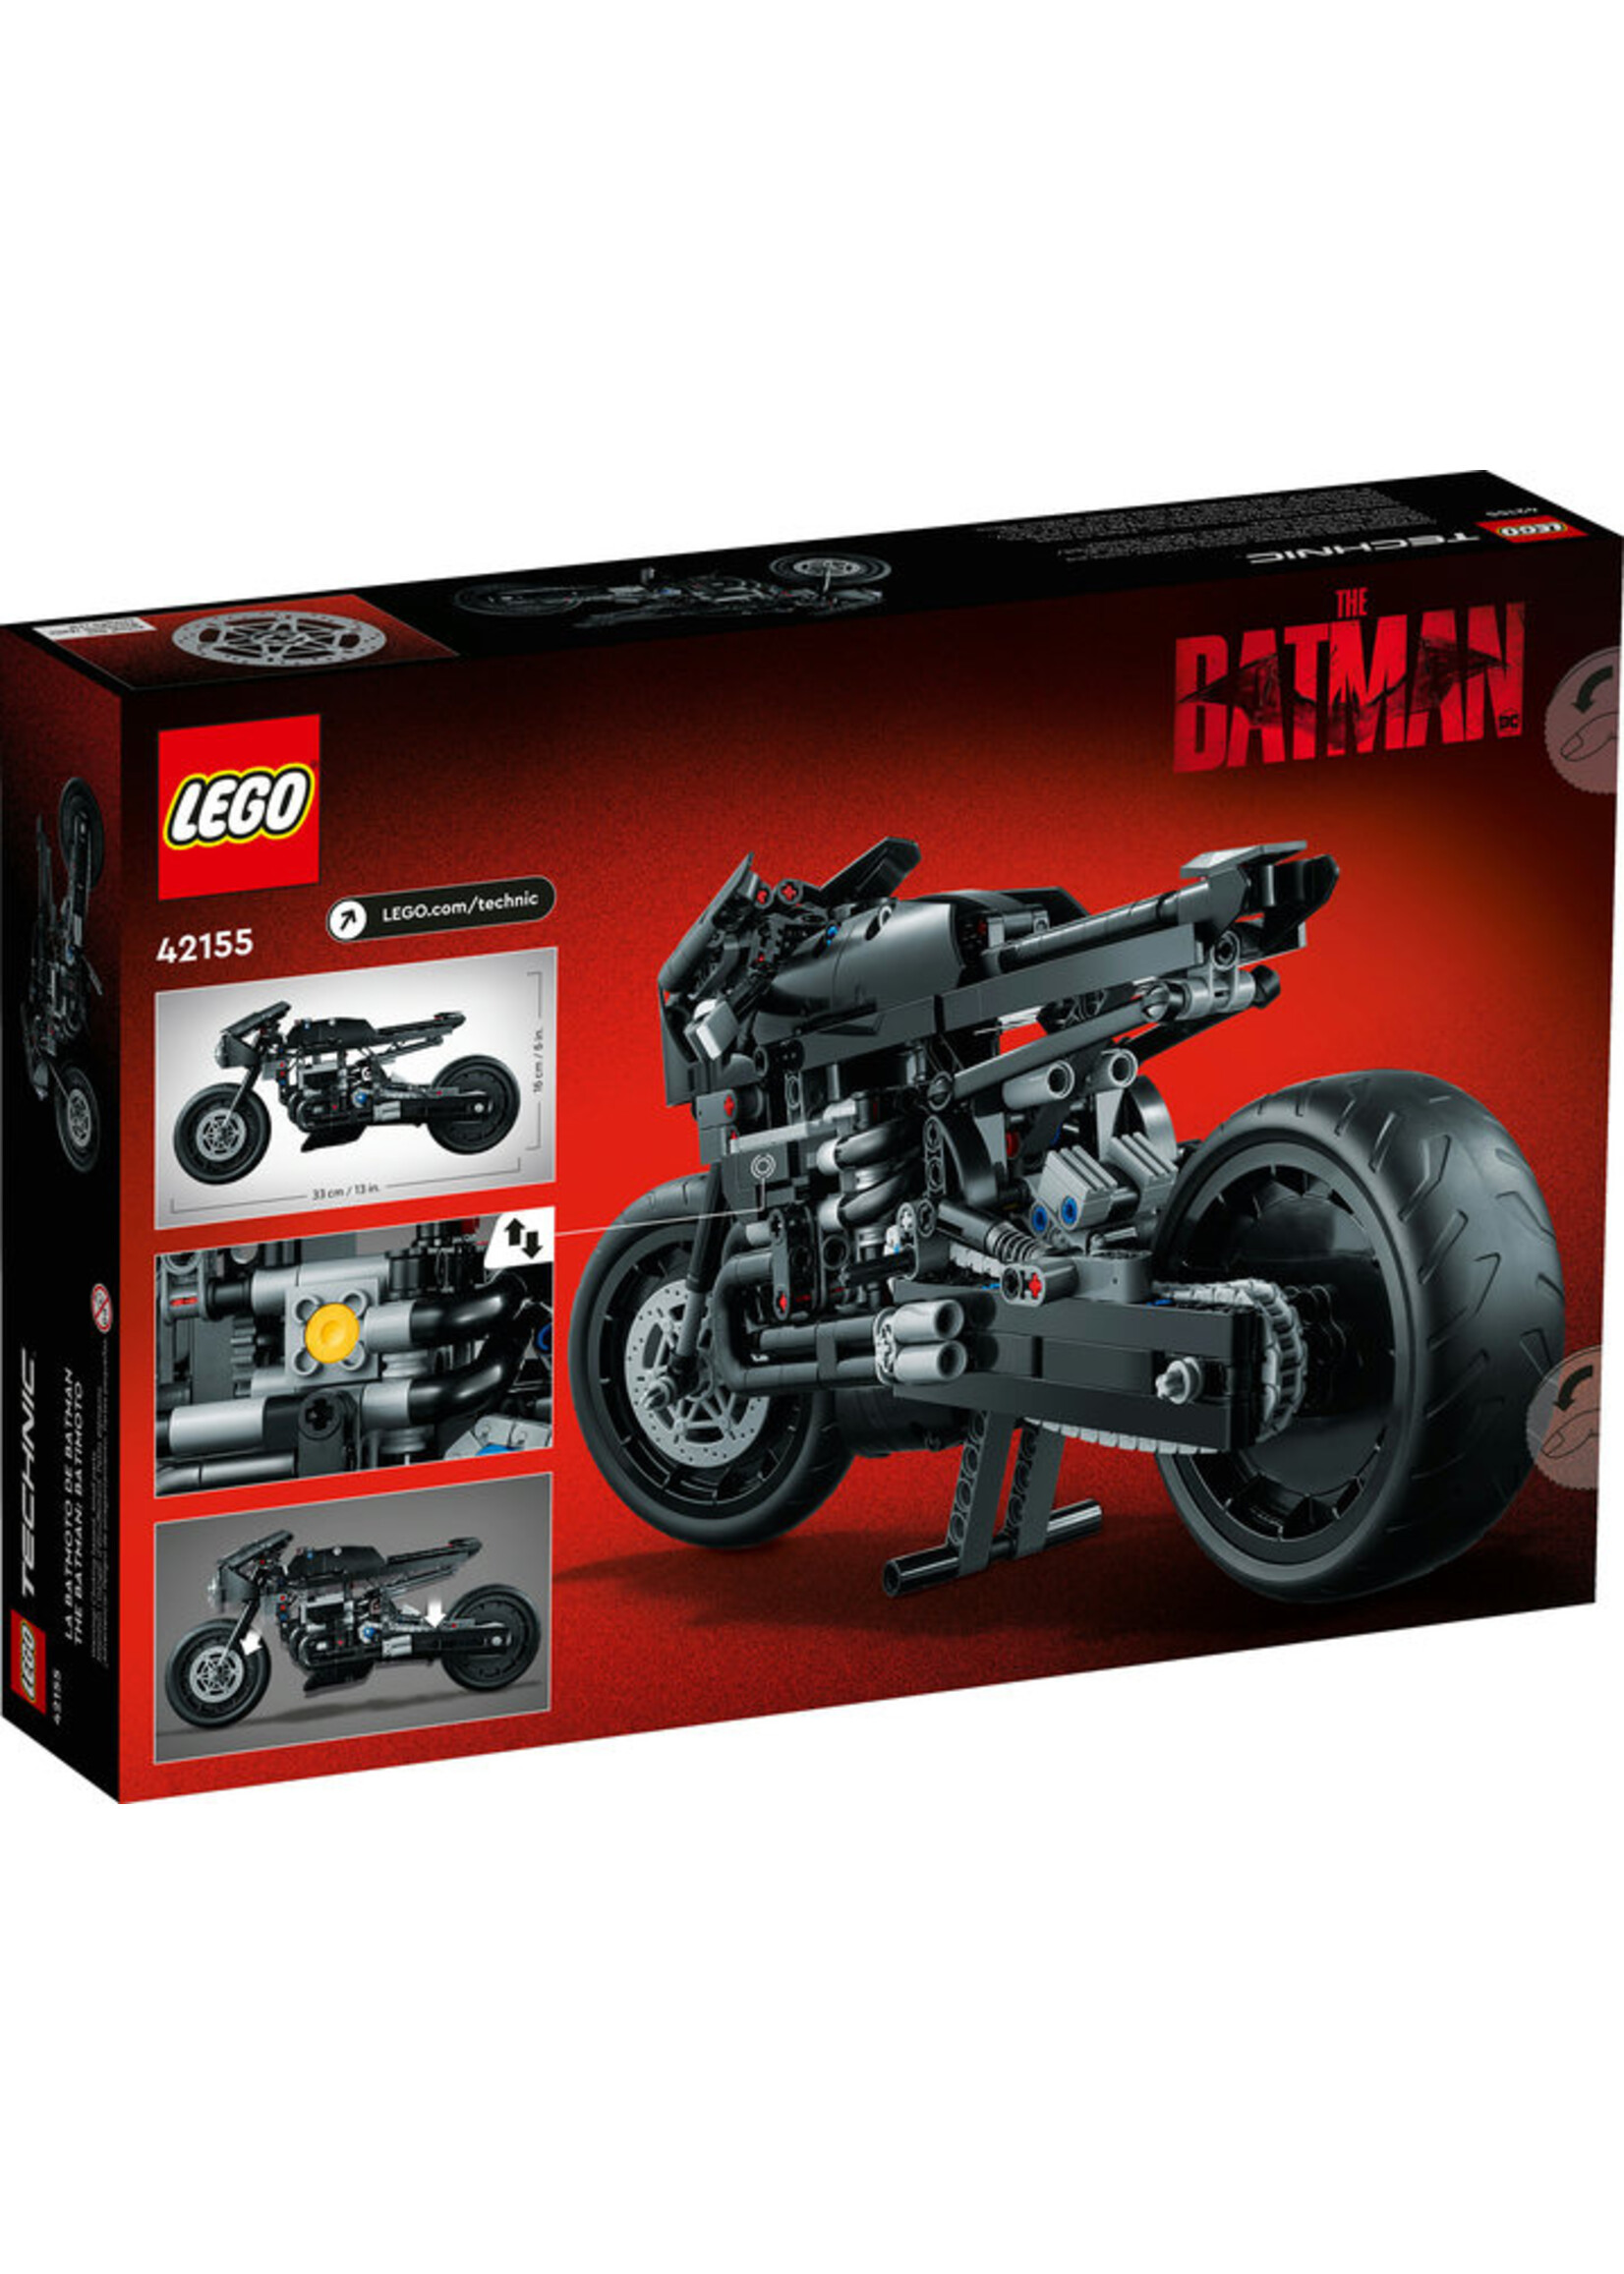 LEGO 42155 - The Batman - Batcycle